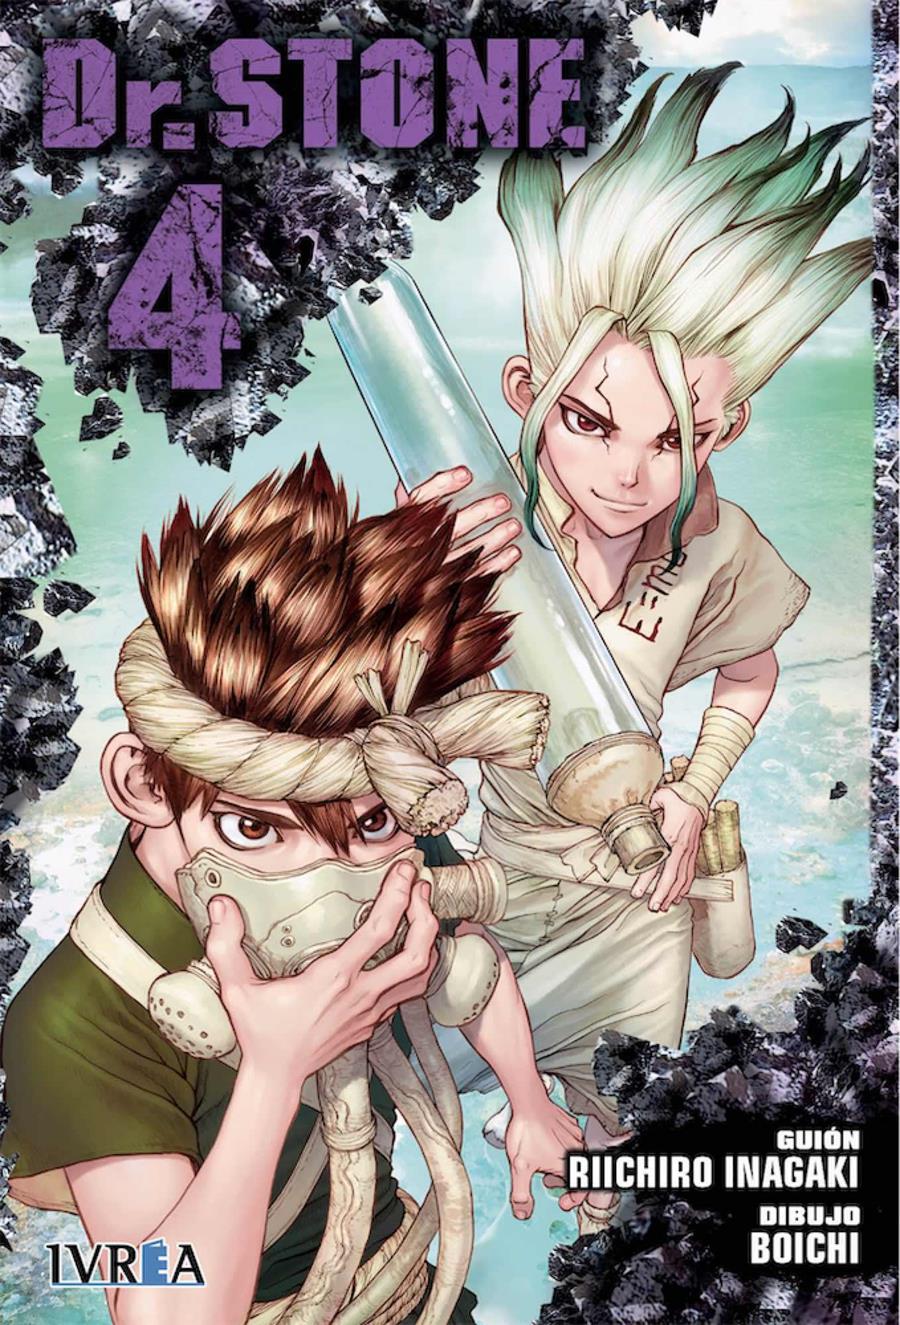 Dr. Stone 04 | N1118-IVR04 | Riichiro Inagaki, Boichi | Terra de Còmic - Tu tienda de cómics online especializada en cómics, manga y merchandising